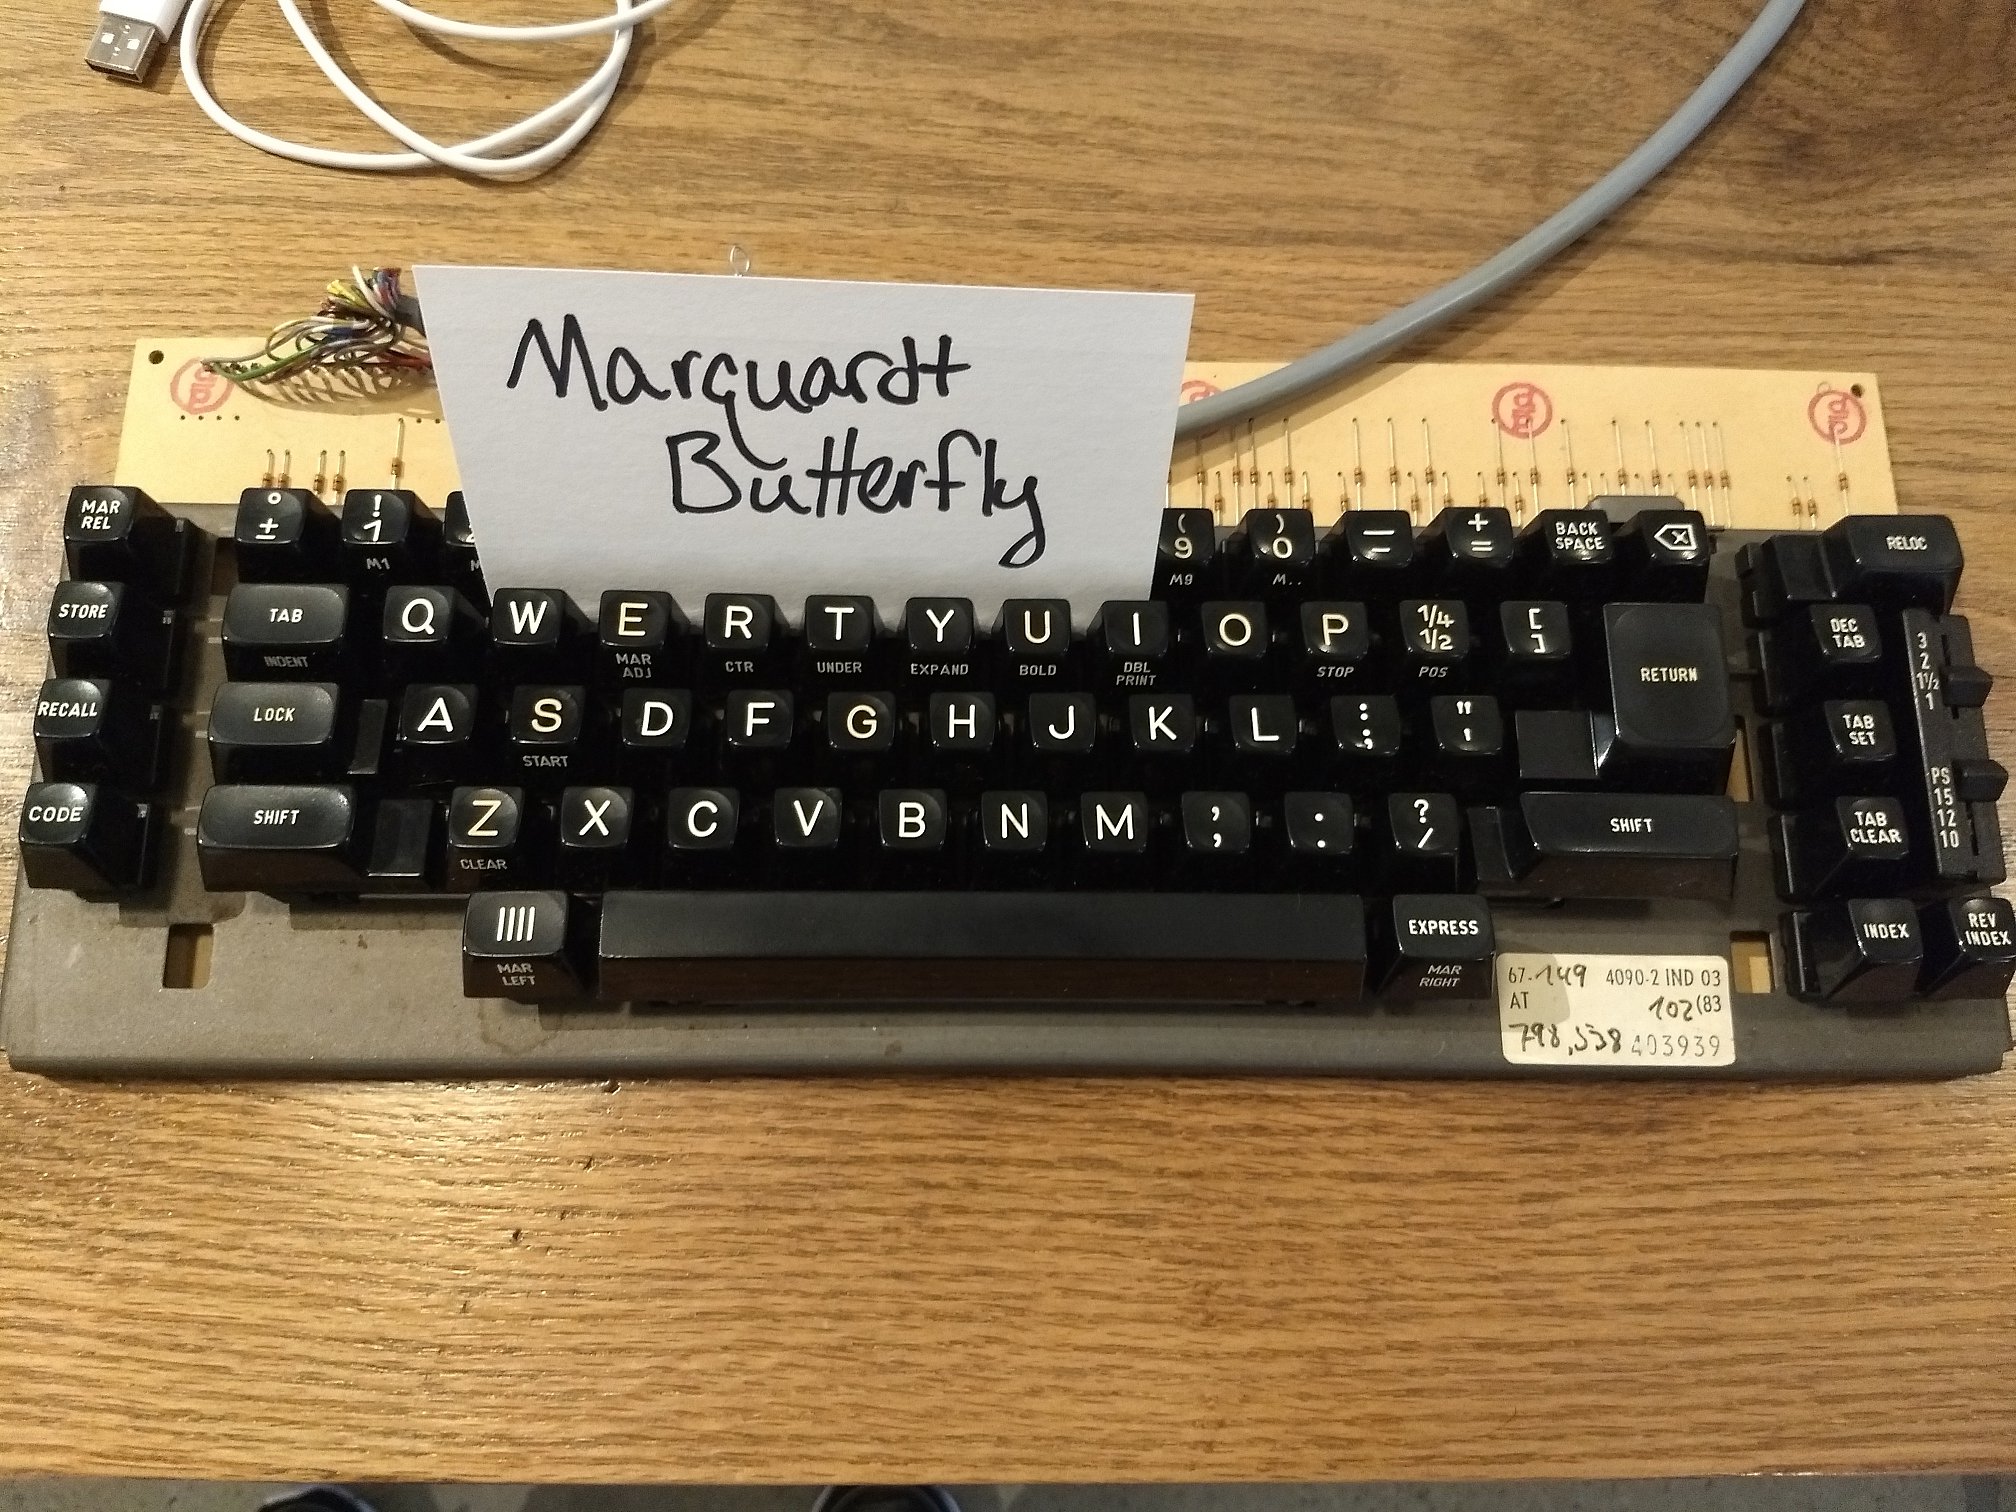 marquardt butterfly keyboard 201711 71864 s